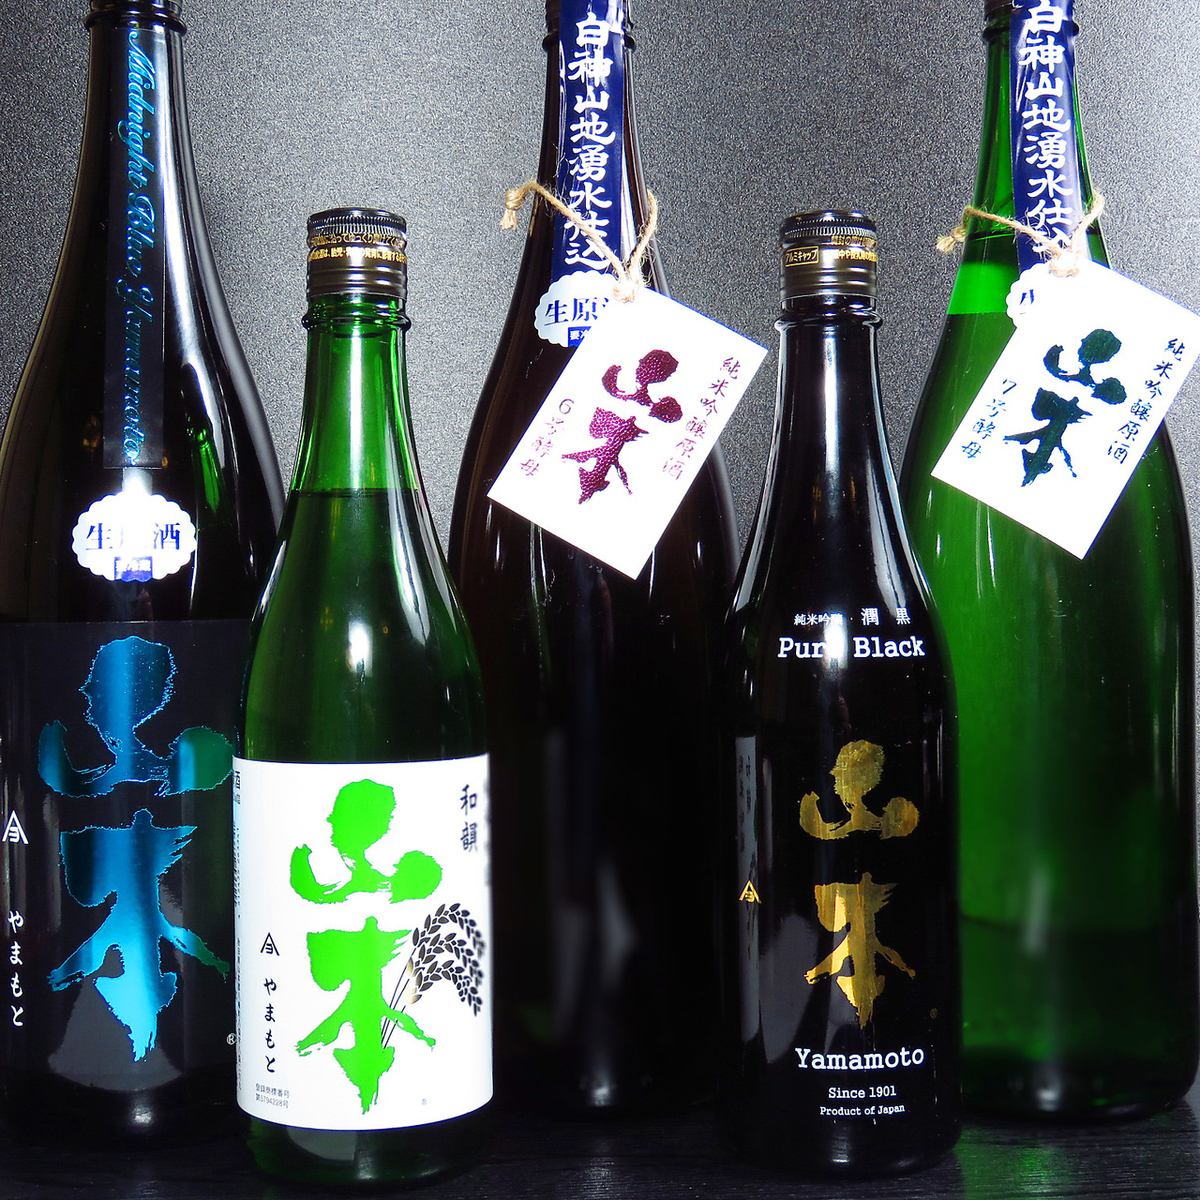 쿠시젠의 매력은 니혼슈/본격 소주/1800종 이상의 음료를 즐길 수 있습니다.